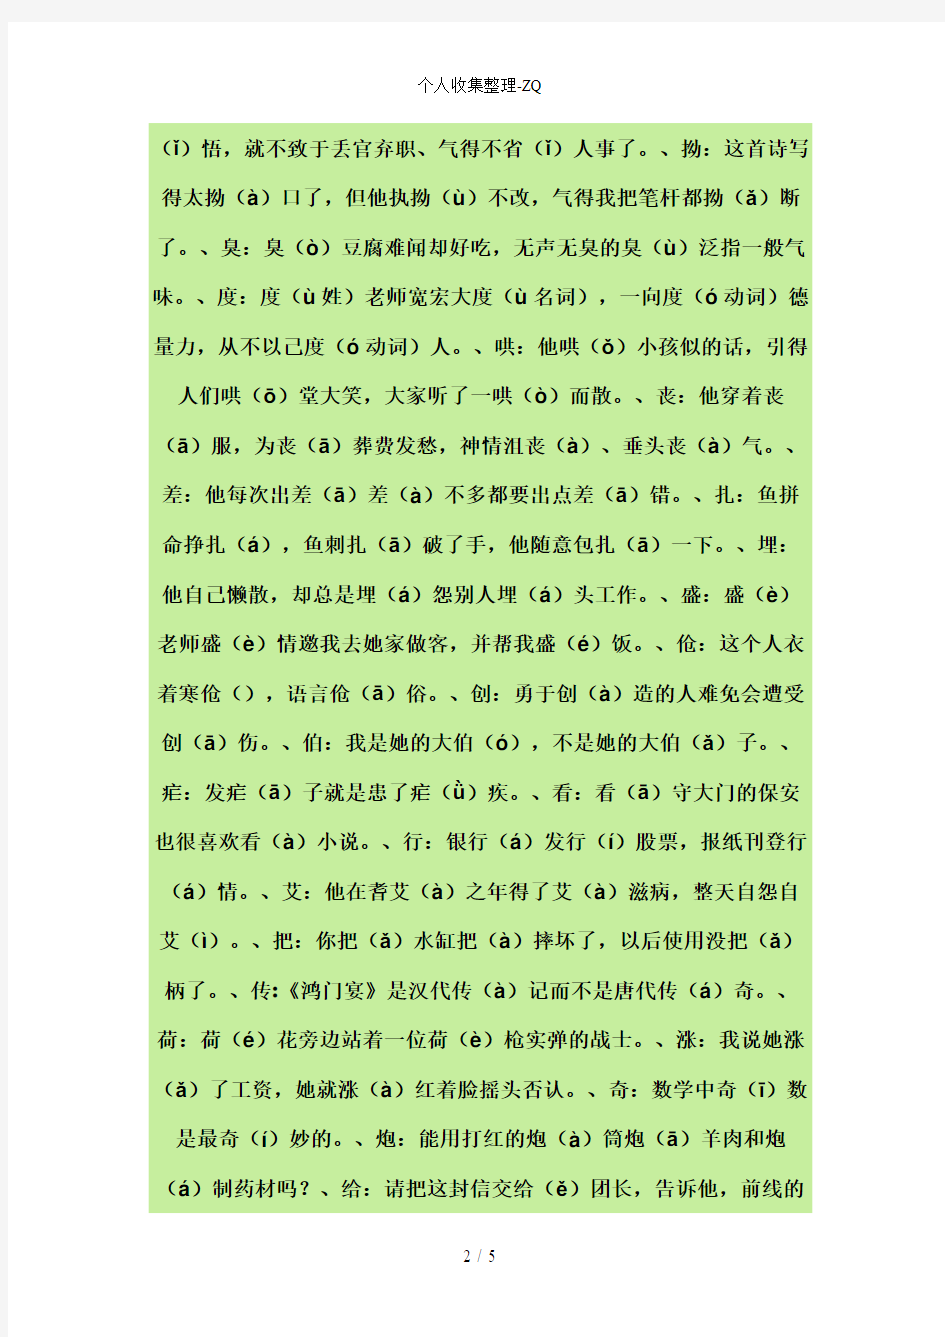 【收集】108个汉字多音字汇总